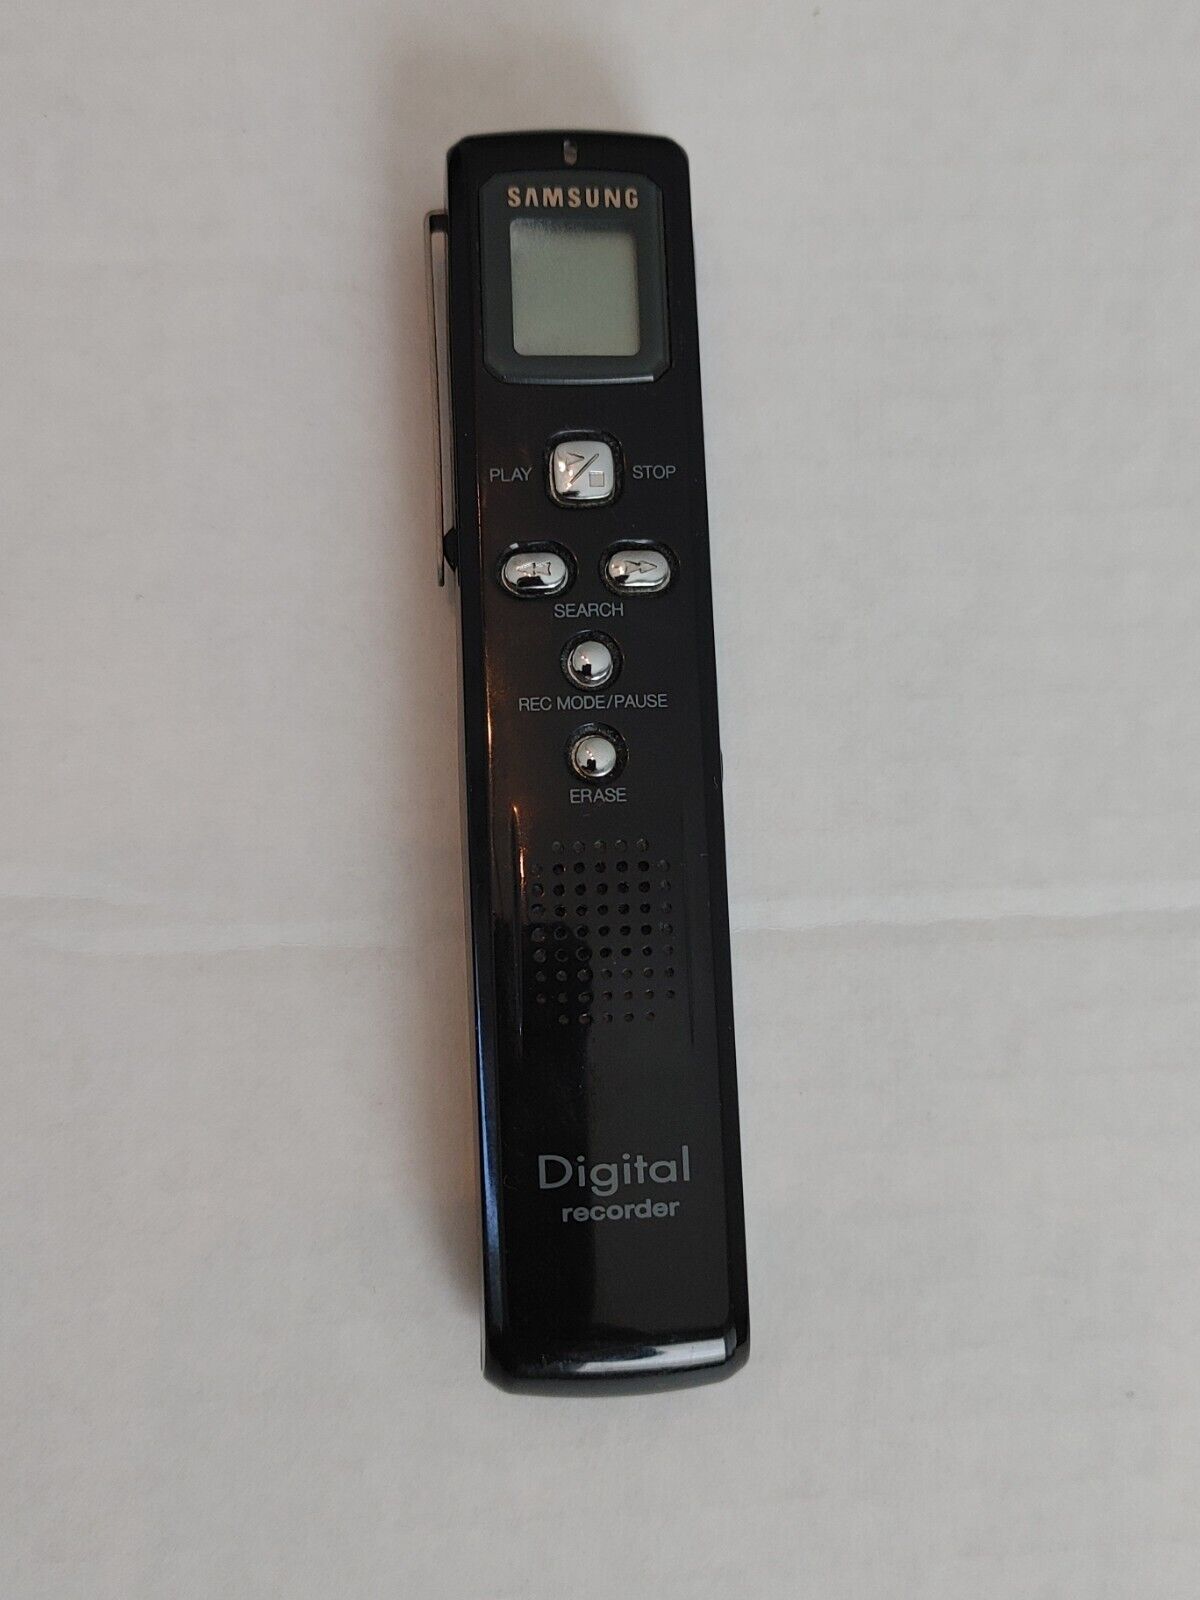 digital recorder Samsung SVR 240-Tested  complete